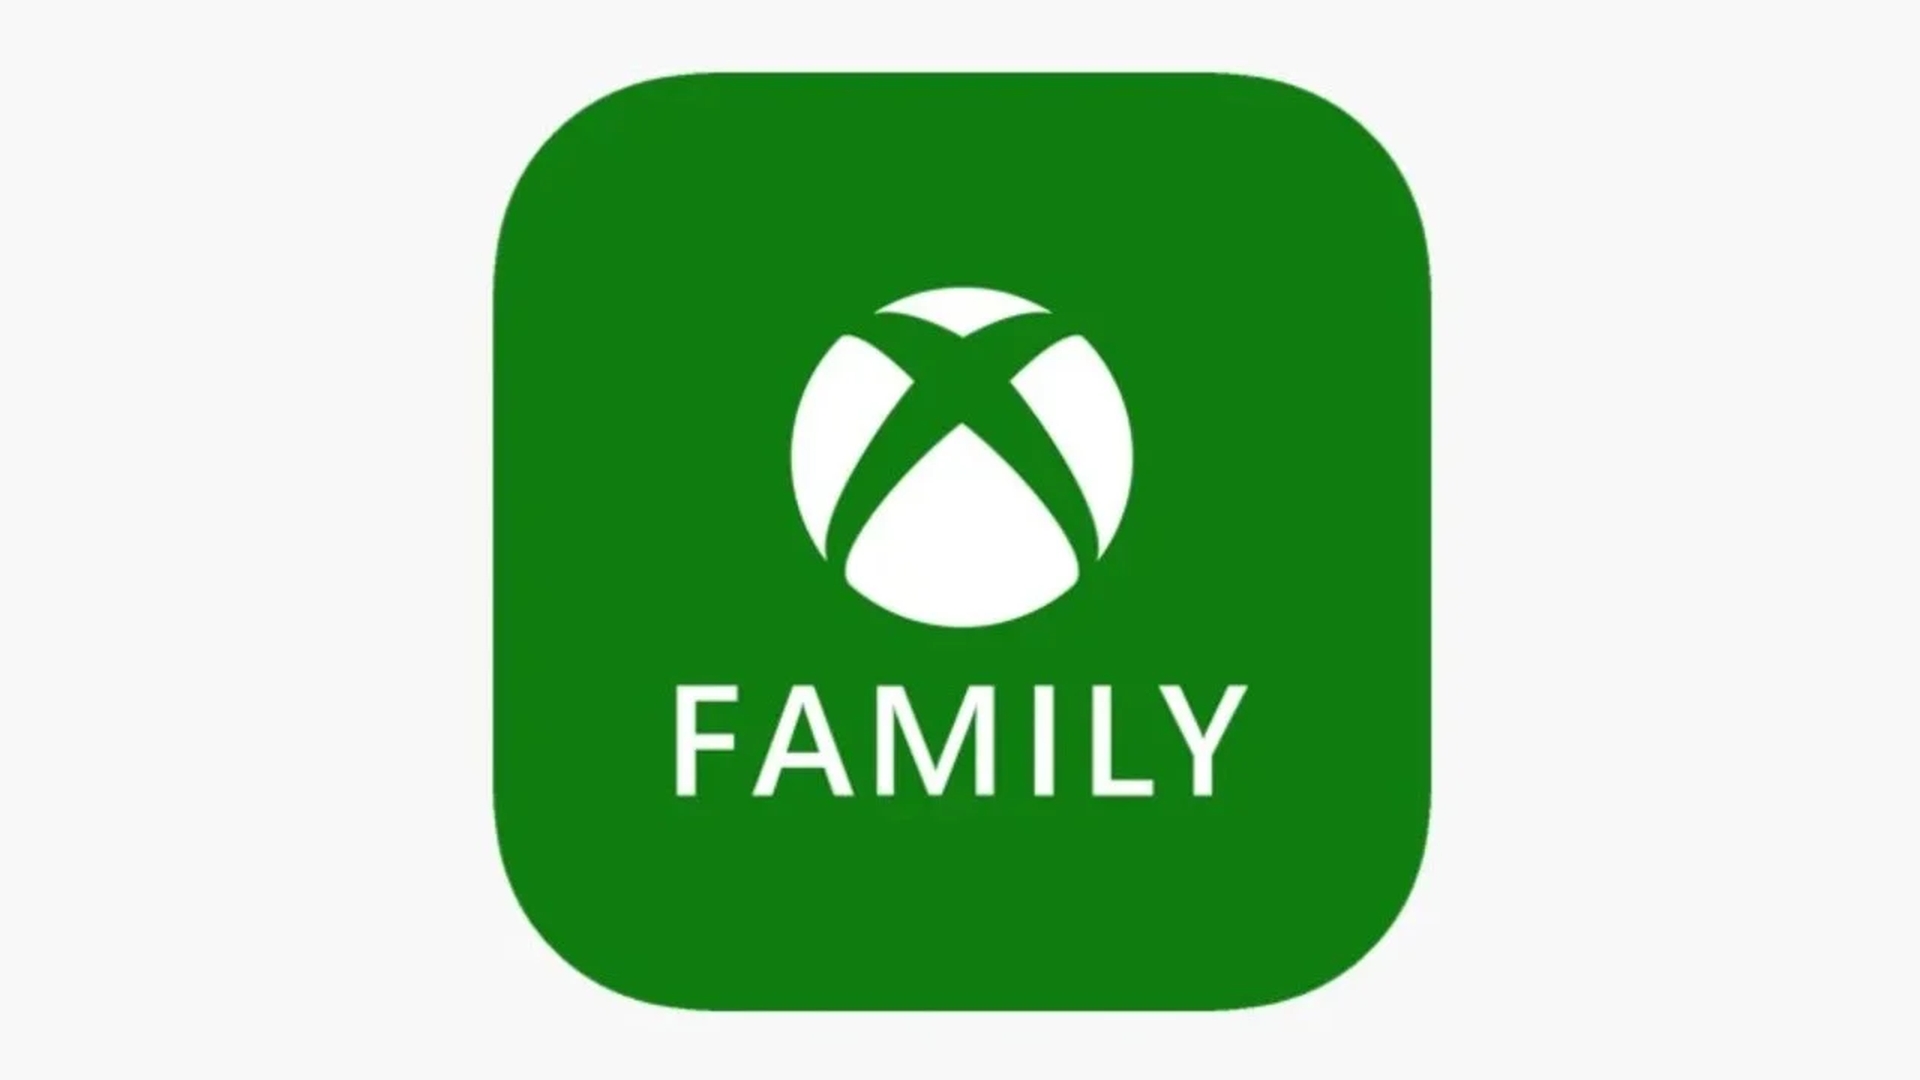 Aujourd'hui, nous allons couvrir le plan familial Xbox Game Pass, qui est actuellement testé par Microsoft et qui facilitera le partage des abonnements.